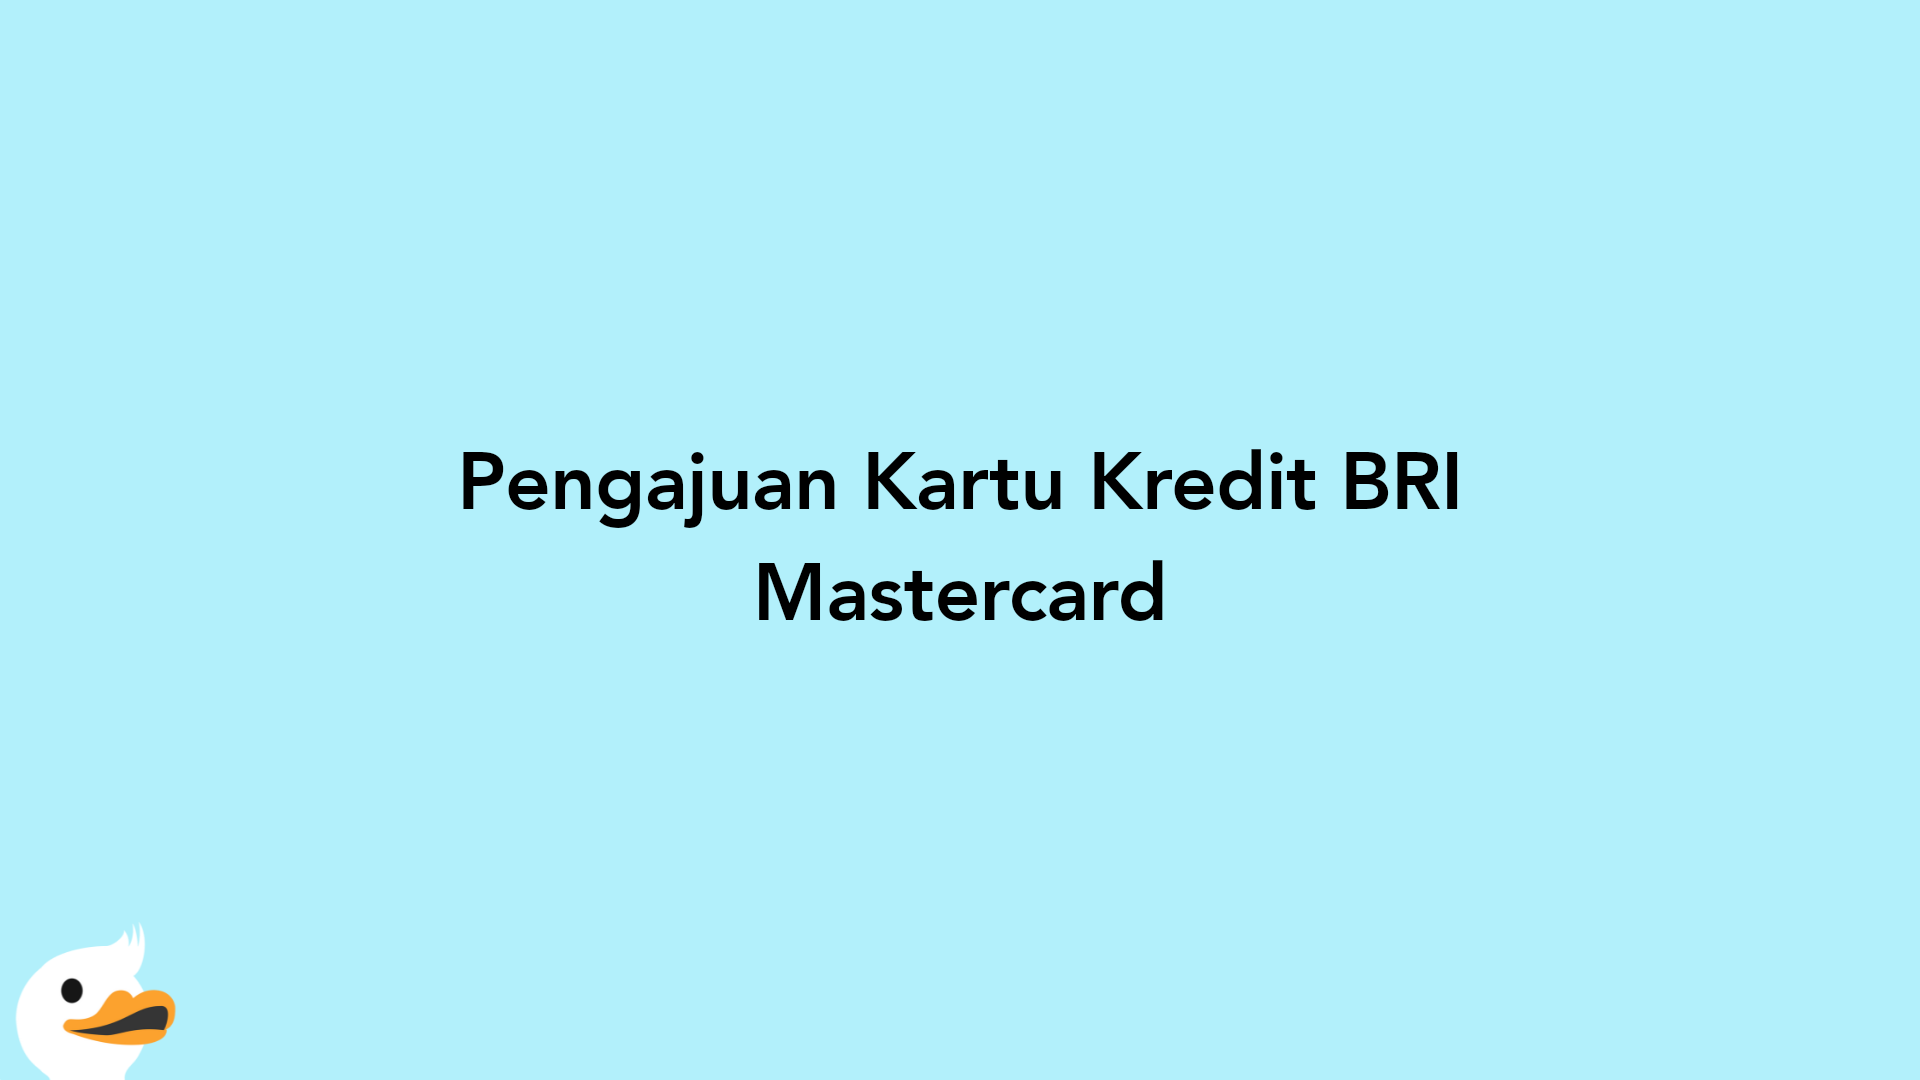 Pengajuan Kartu Kredit BRI Mastercard